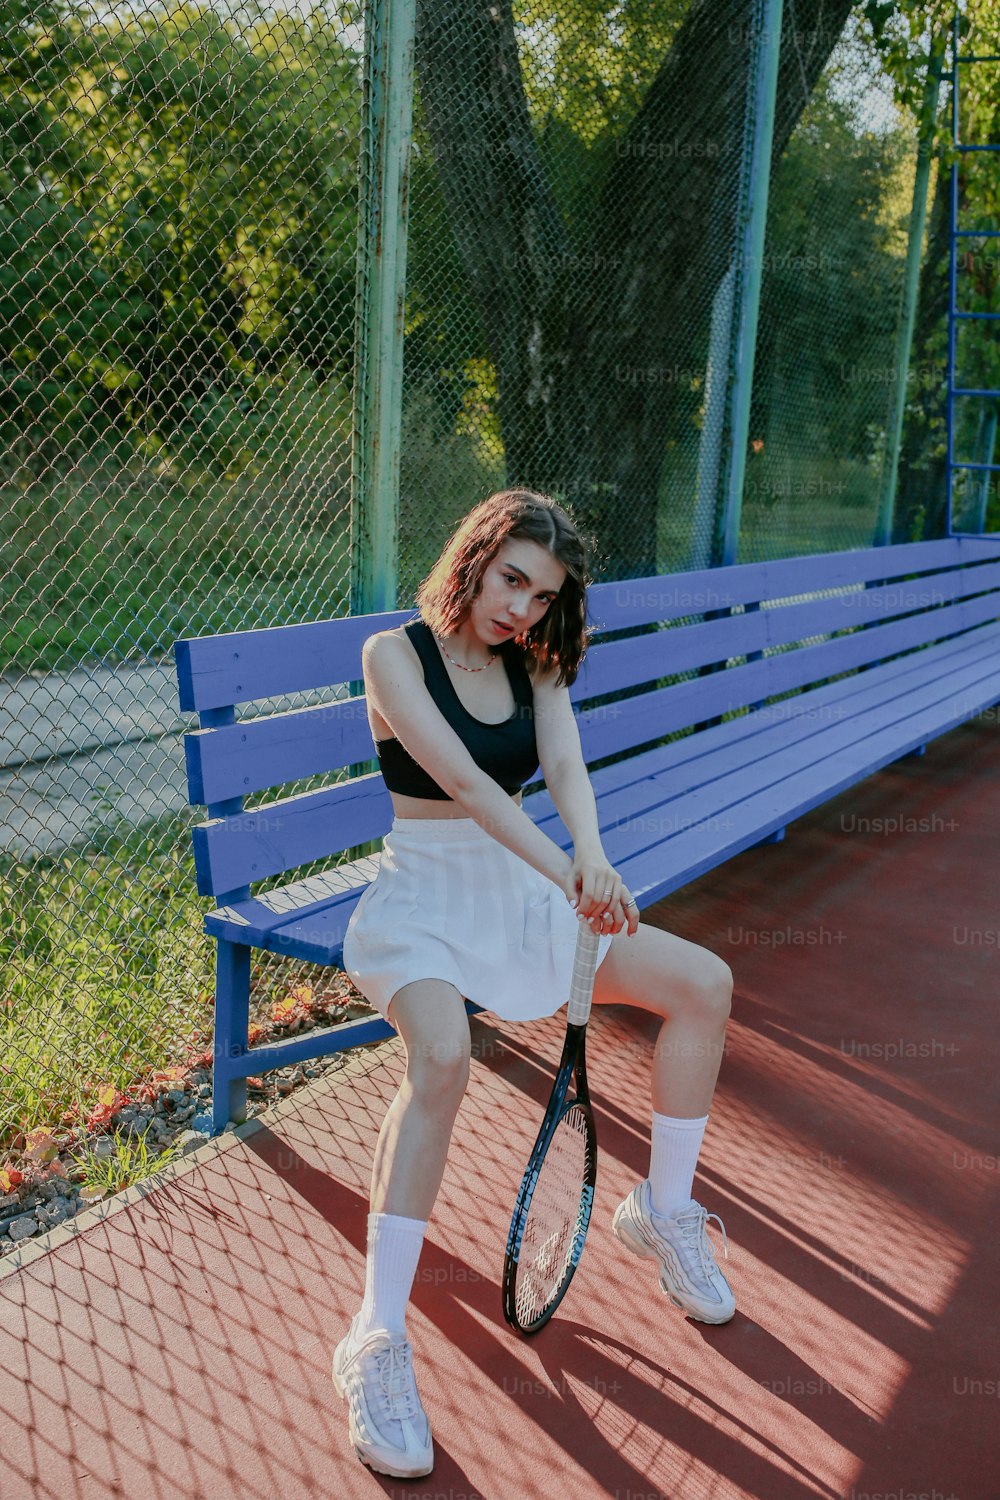 Una mujer sentada en un banco sosteniendo una raqueta de tenis